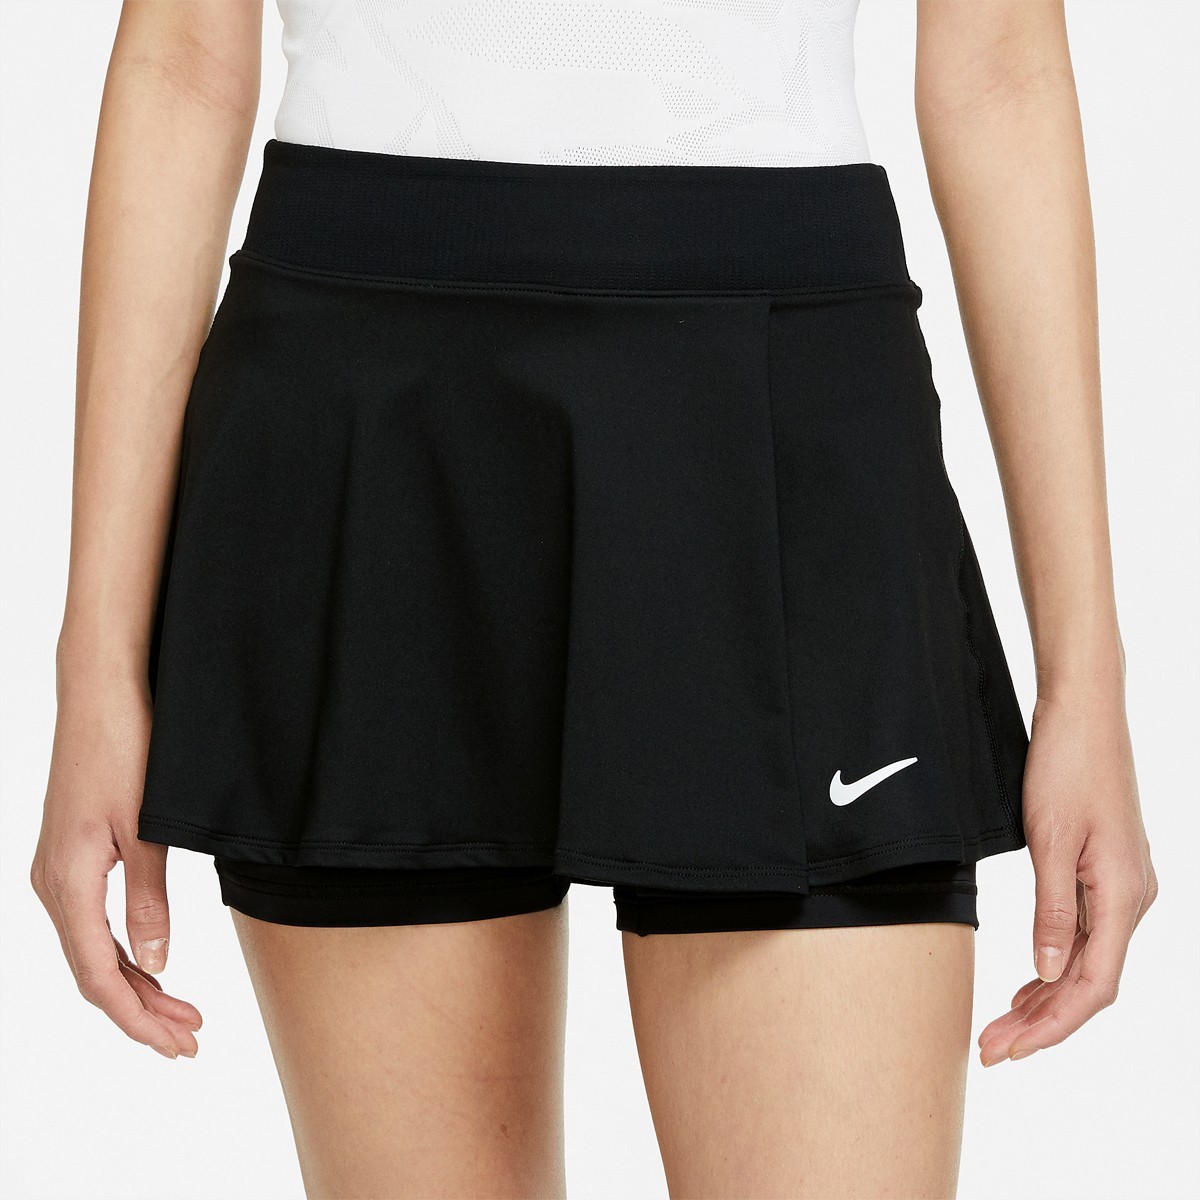 Теннисная юбка женская Nike Flouncy Skirt black/white